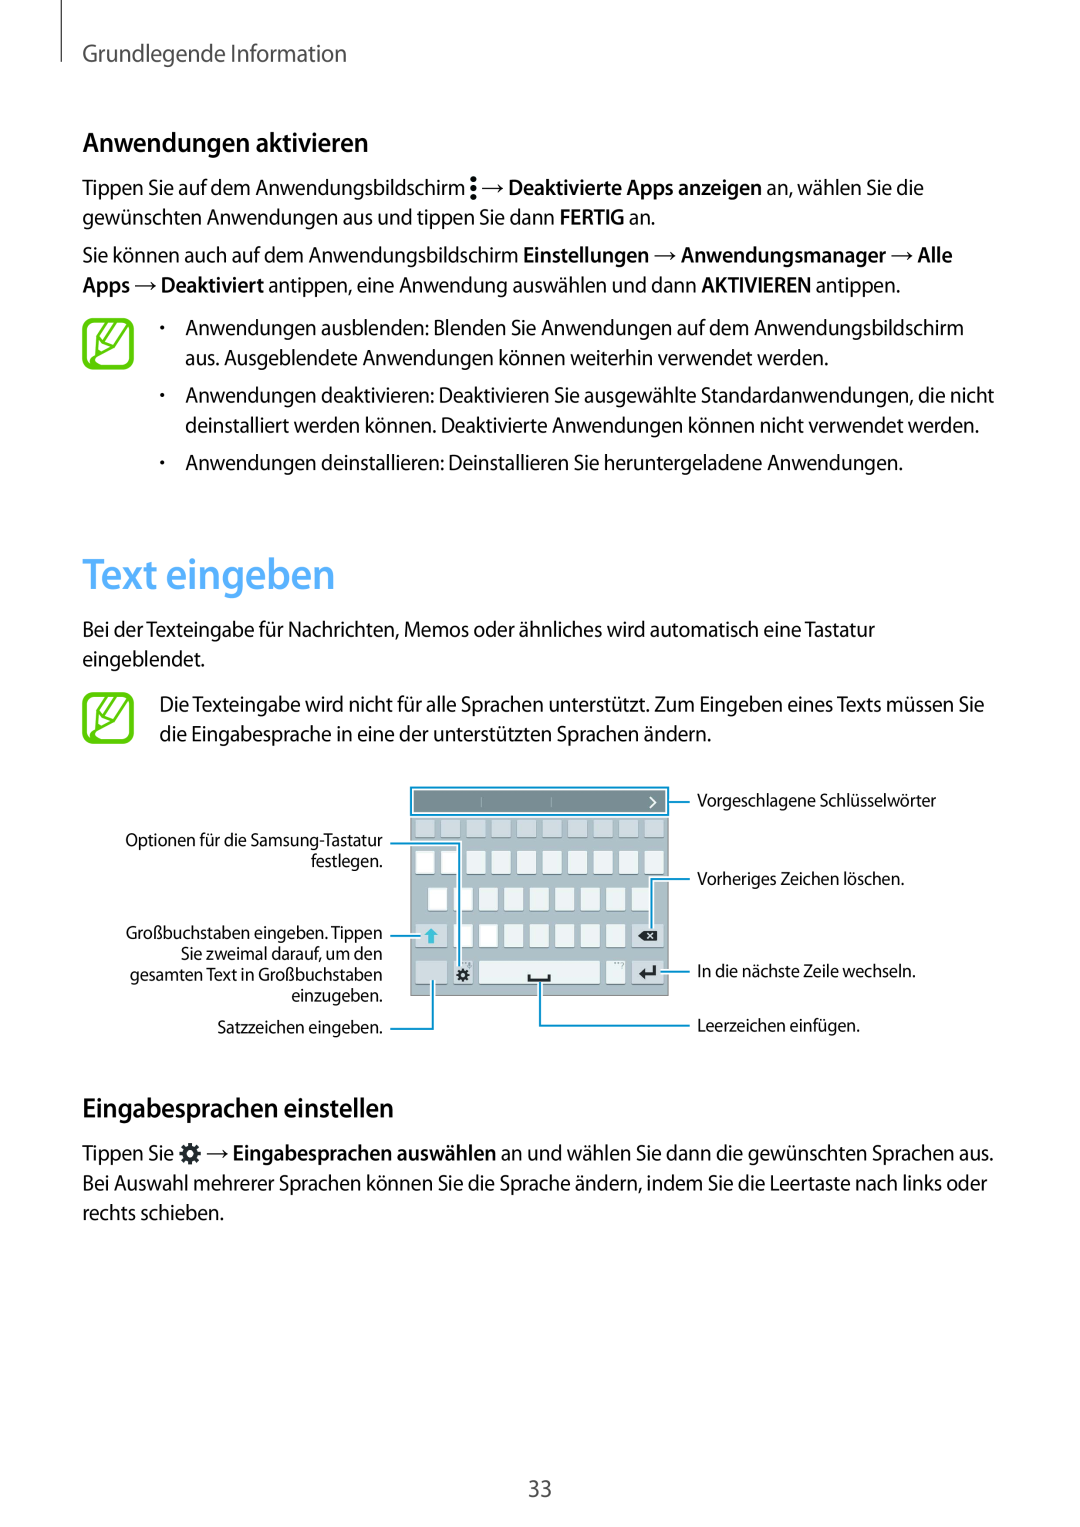 Samsung SM-G901FZKABOG manual Text eingeben, Anwendungen aktivieren, Eingabesprachen einstellen, Grundlegende Information 